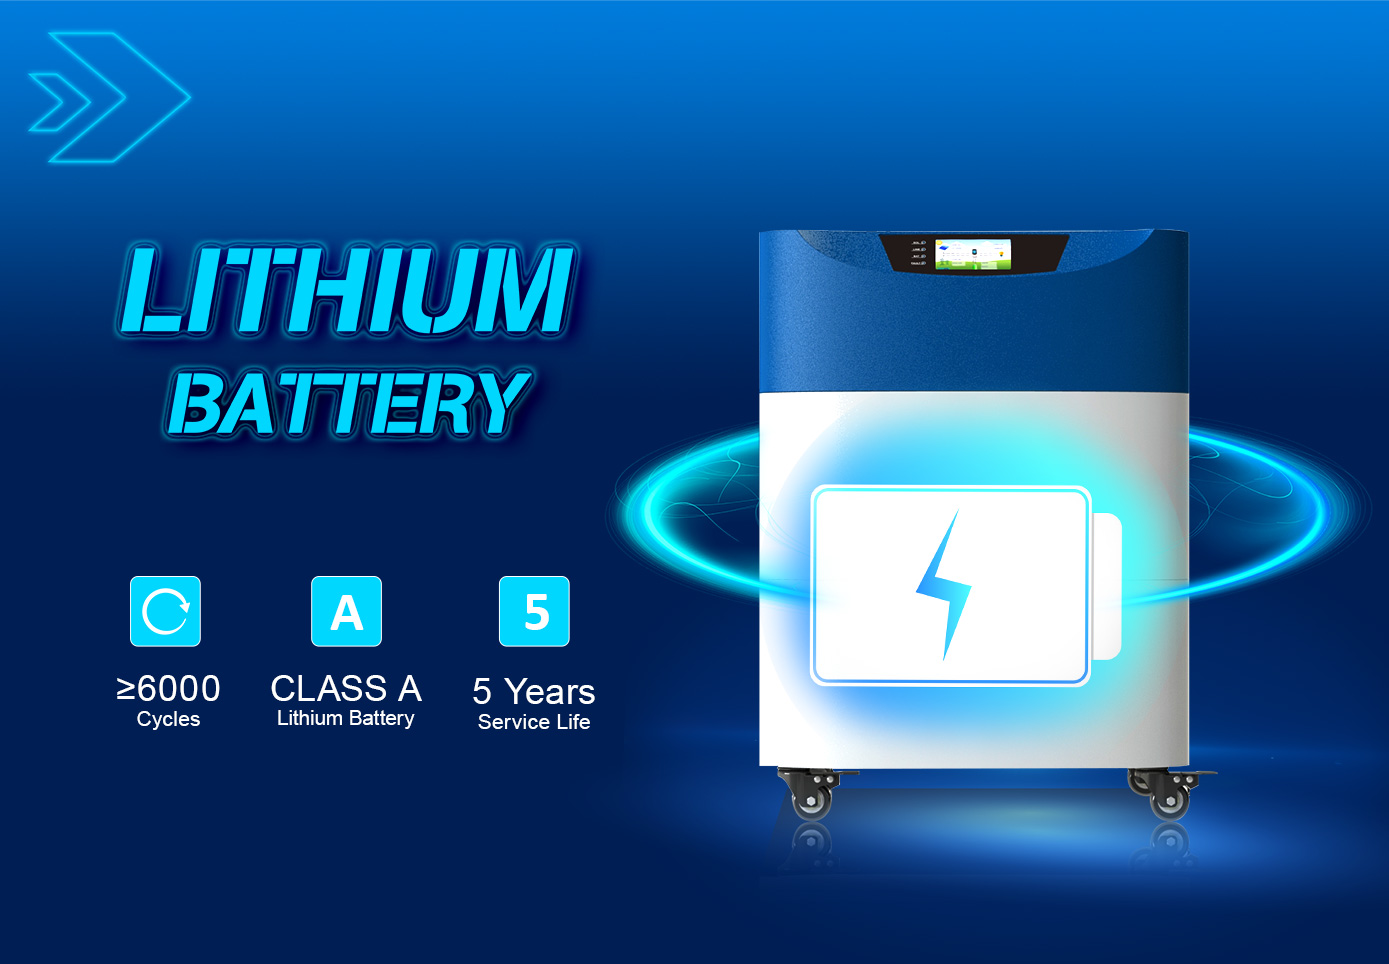 Built-in 6000 kitaran bateri litium baru dan mempunyai hayat perkhidmatan 5 tahun.